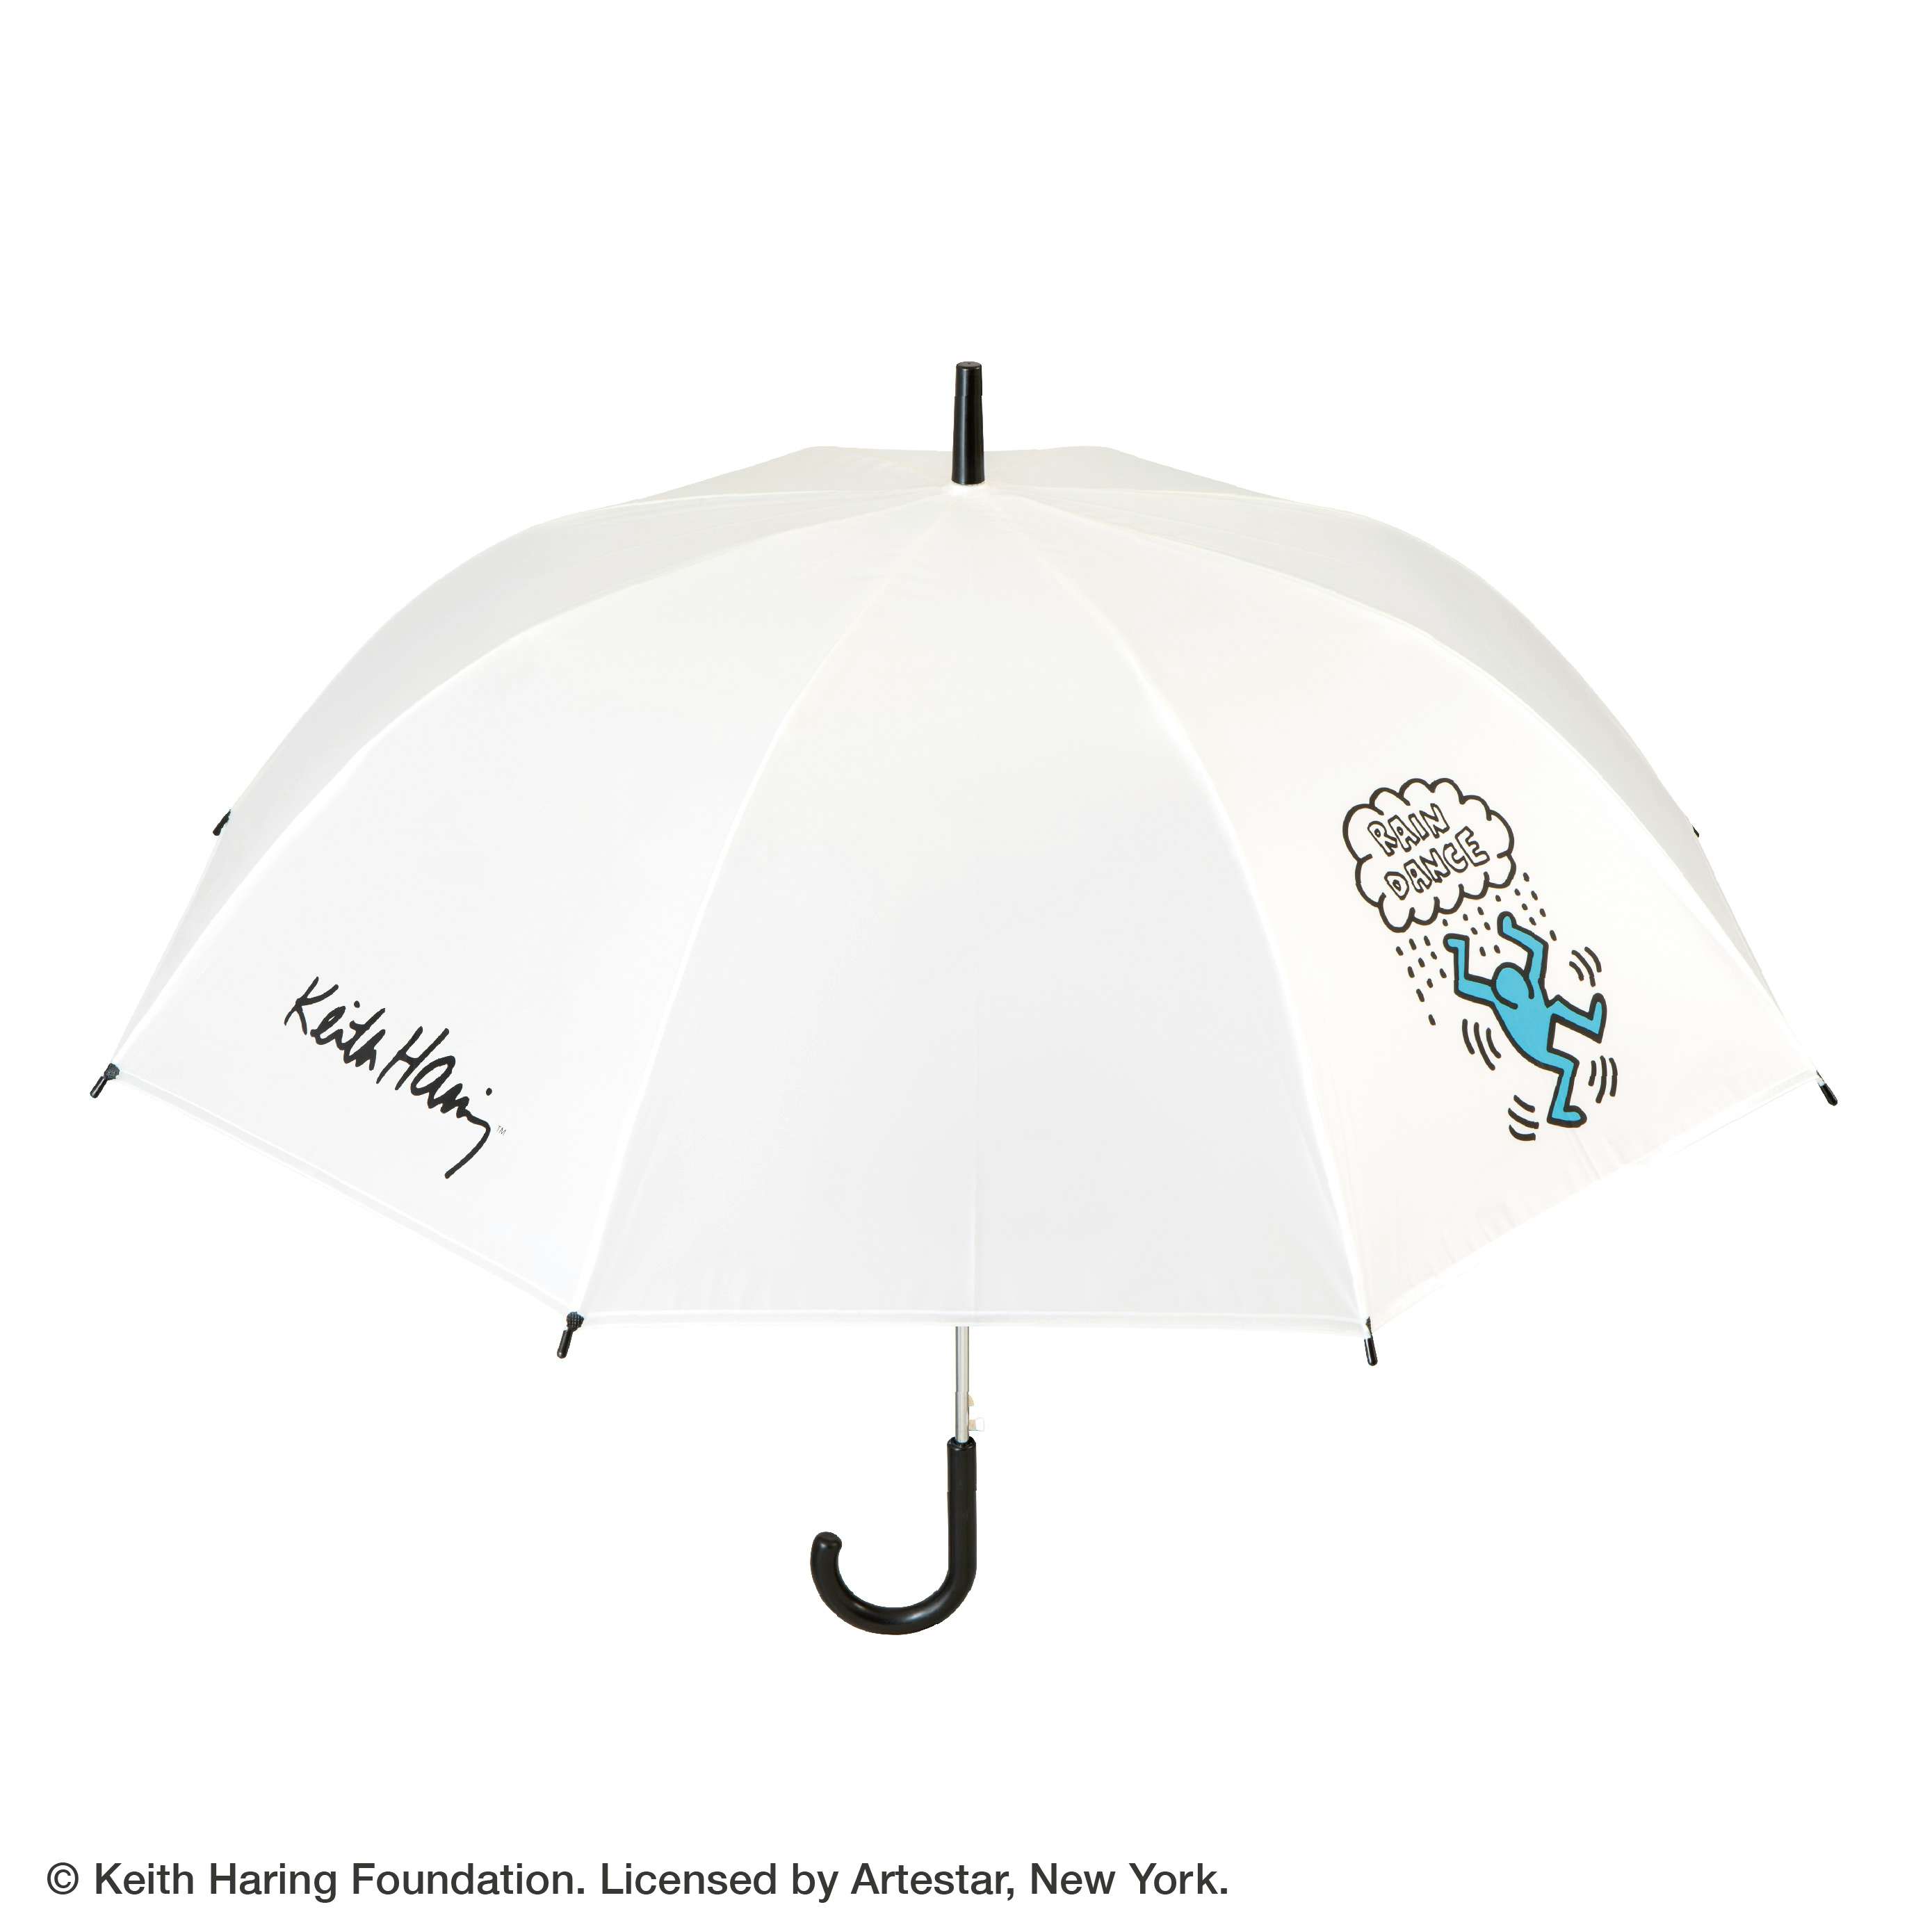 ビニール傘をサステナブルに。雨の日を彩るキース・ヘリングの傘が